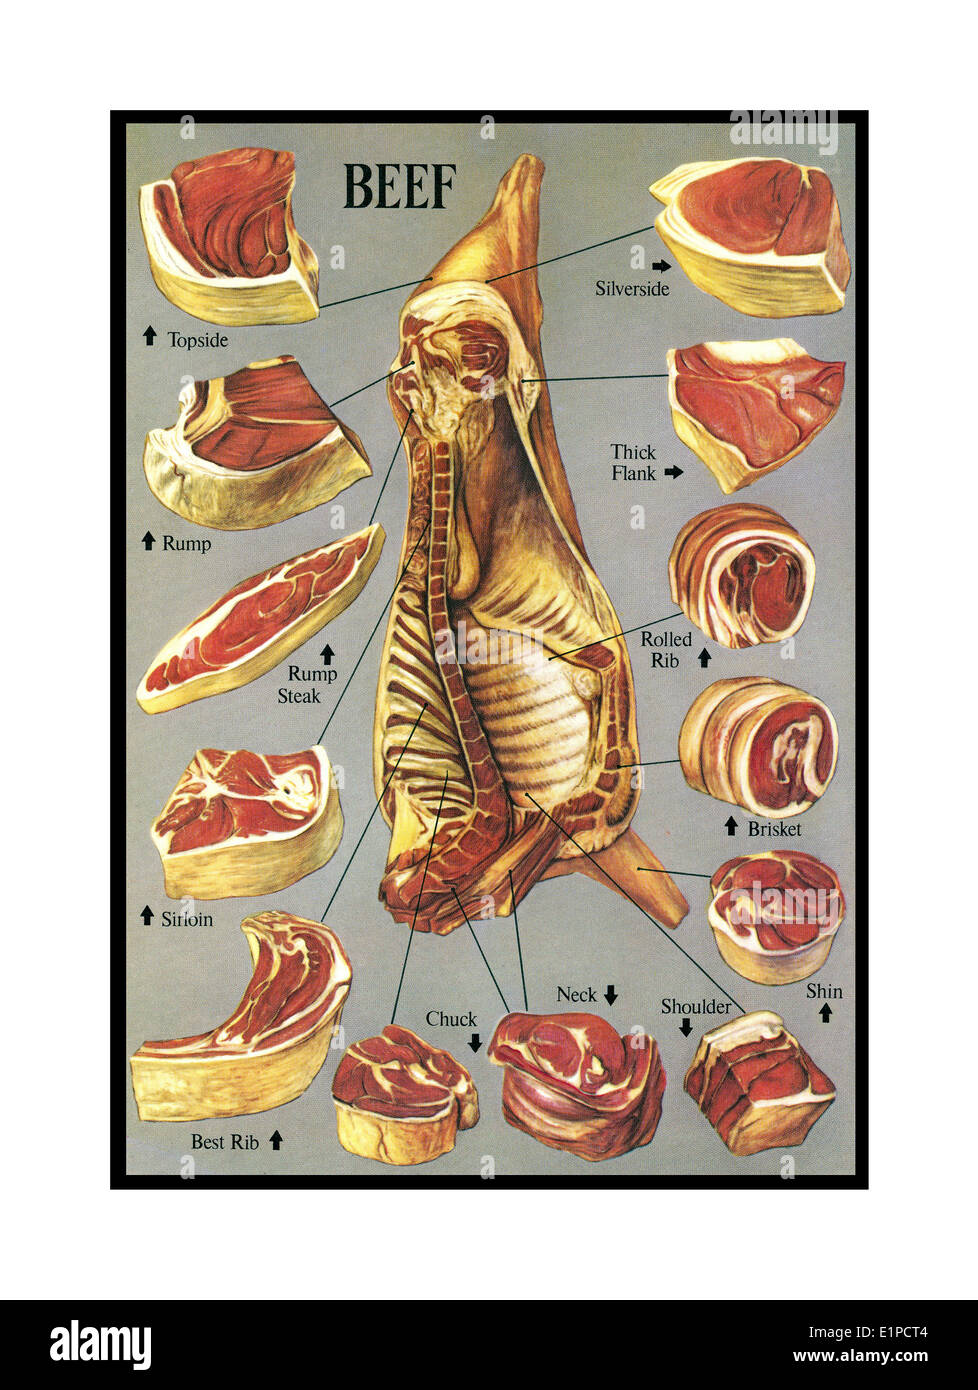 TAGLI DI MANZO ILLUSTRAZIONI cucina Libro di carne illustrazione di una vasta gamma di tagli e articolazioni di macelleria di manzo Foto Stock